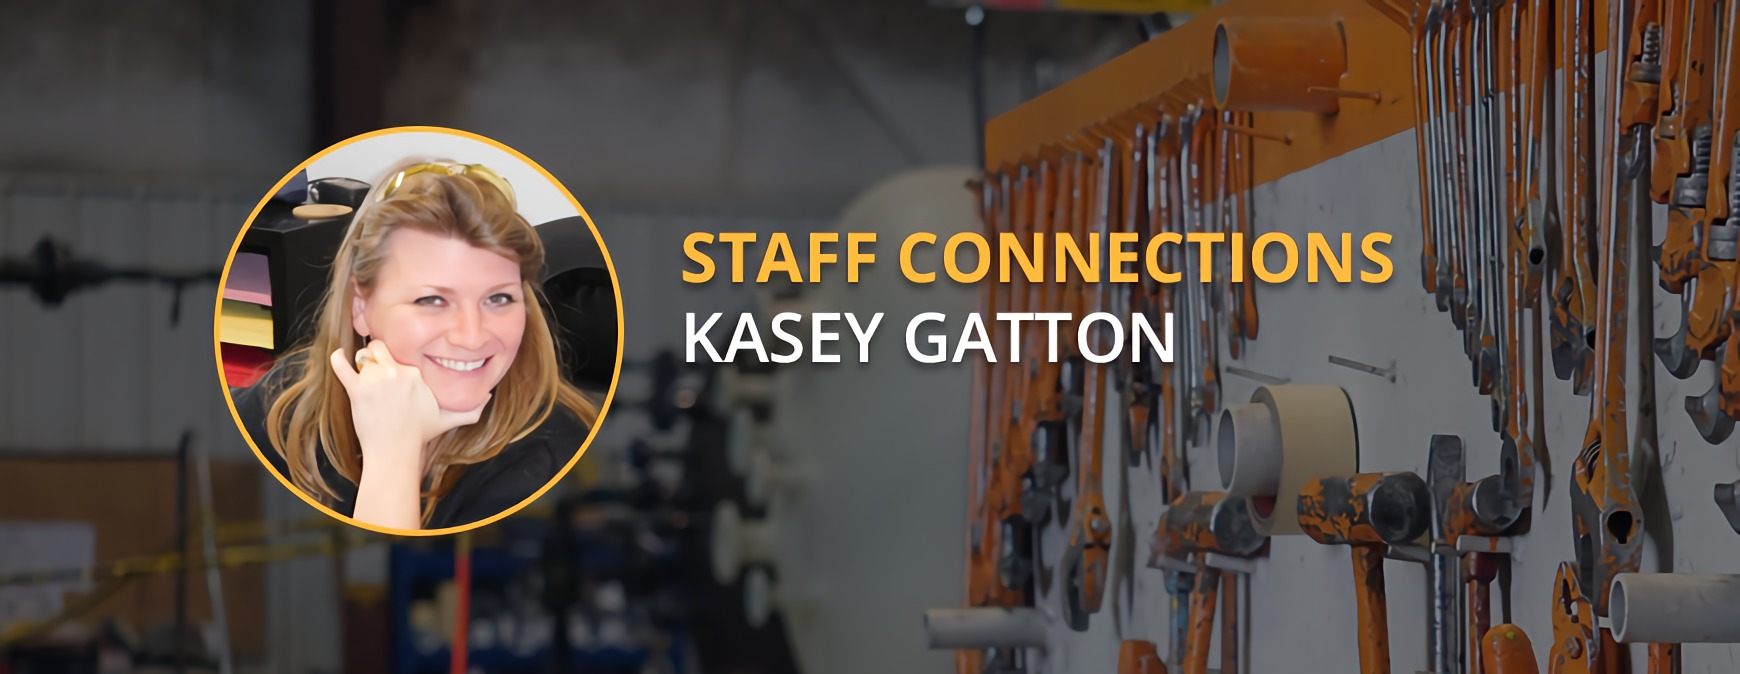 Kasey Gatton staff connection